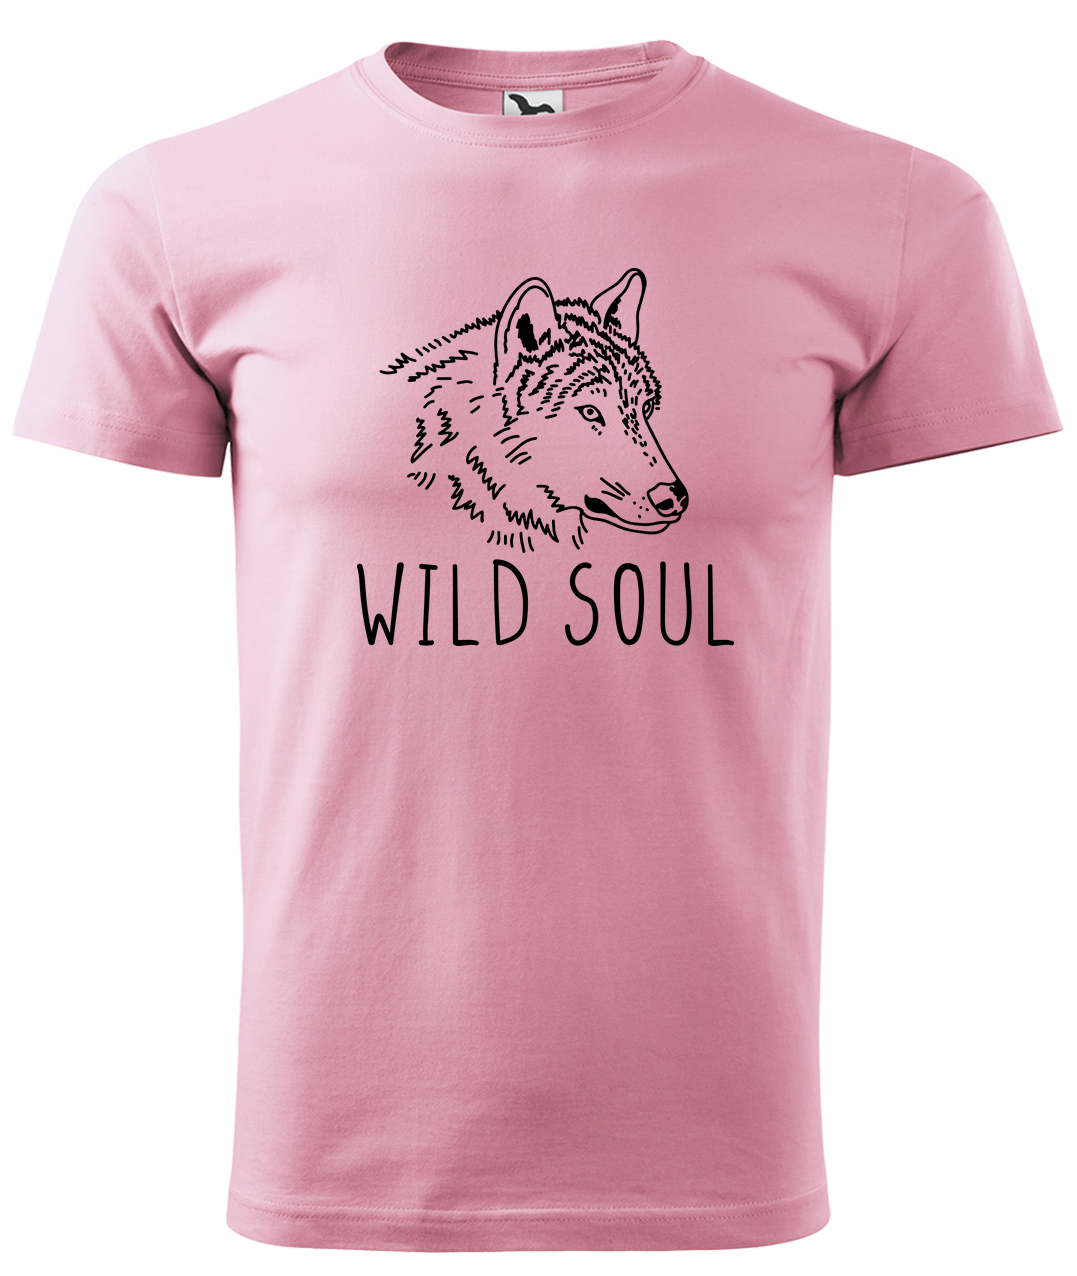 Dětské tričko s vlkem - Wild soul Velikost: 4 roky / 110 cm, Barva: Růžová (30), Délka rukávu: Krátký rukáv